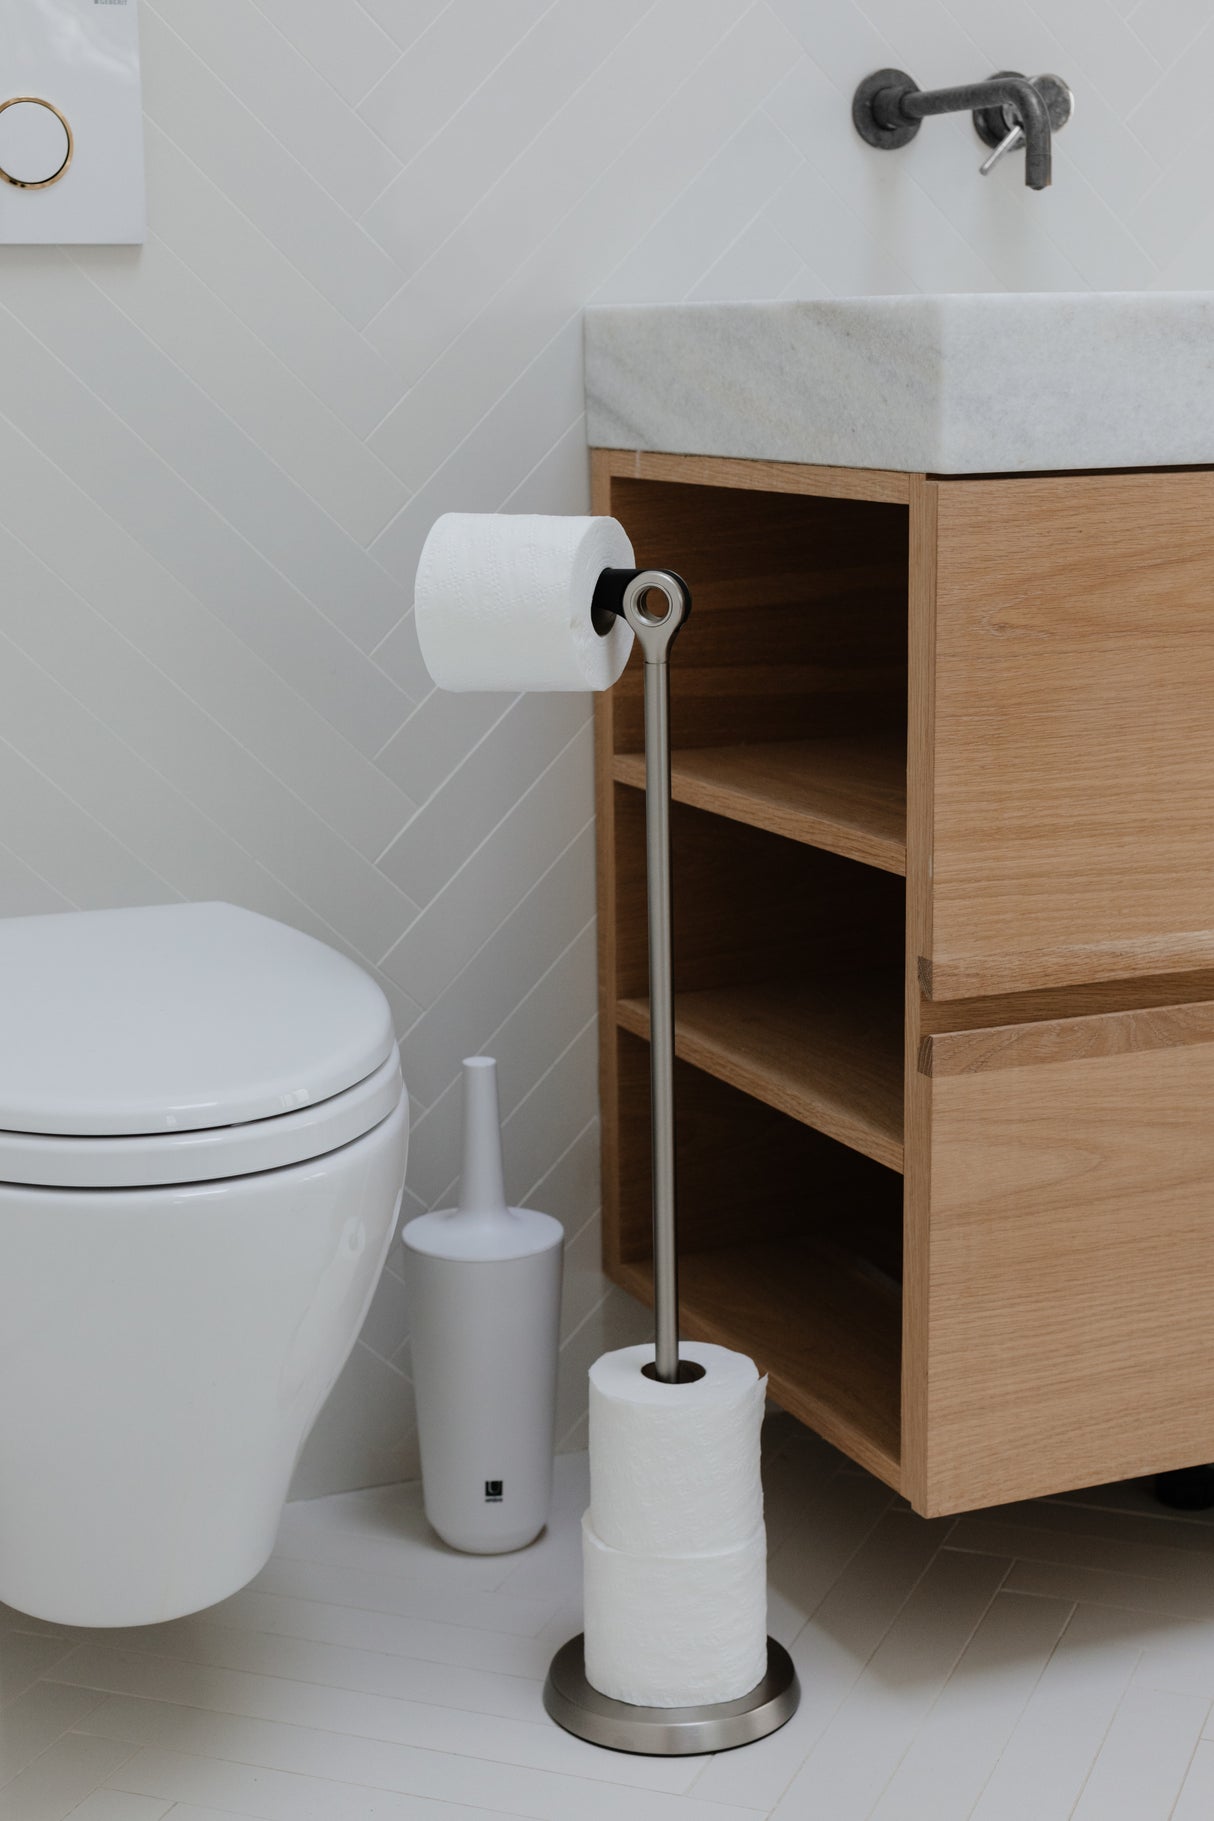 Umbra Freestanding Toilet Paper Holder & Reviews